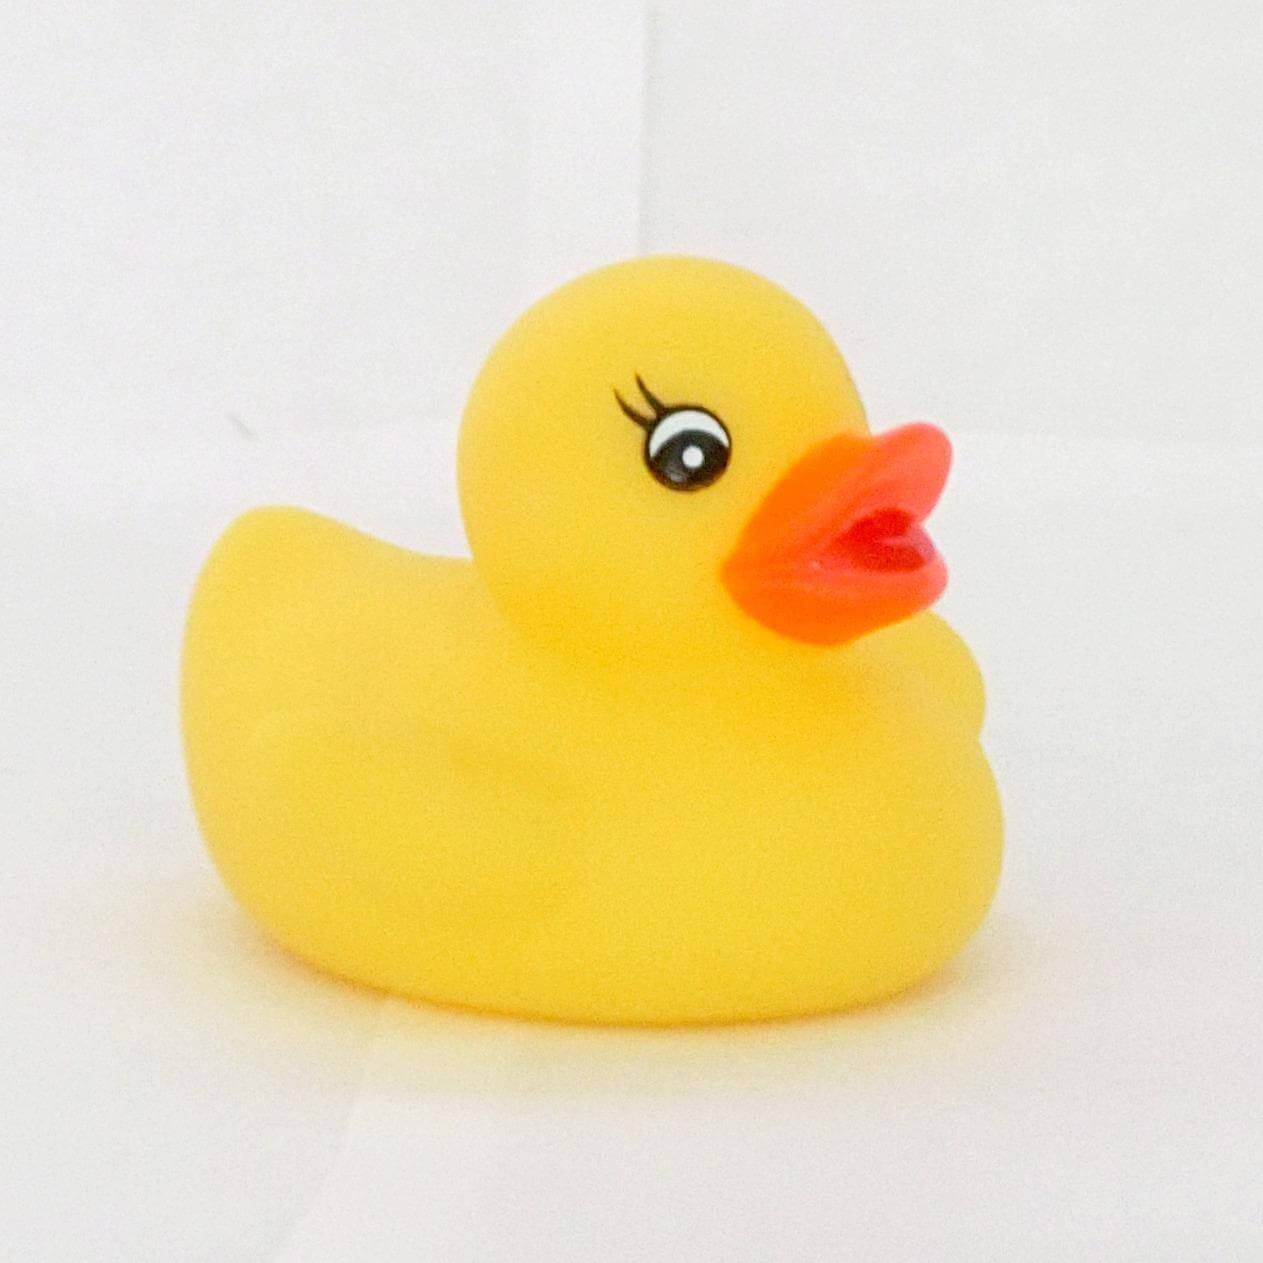 100/200 Pieces Mini Rubber Ducks Miniature Resin Ducks Yellow Tiny Duckies  . L8W6 